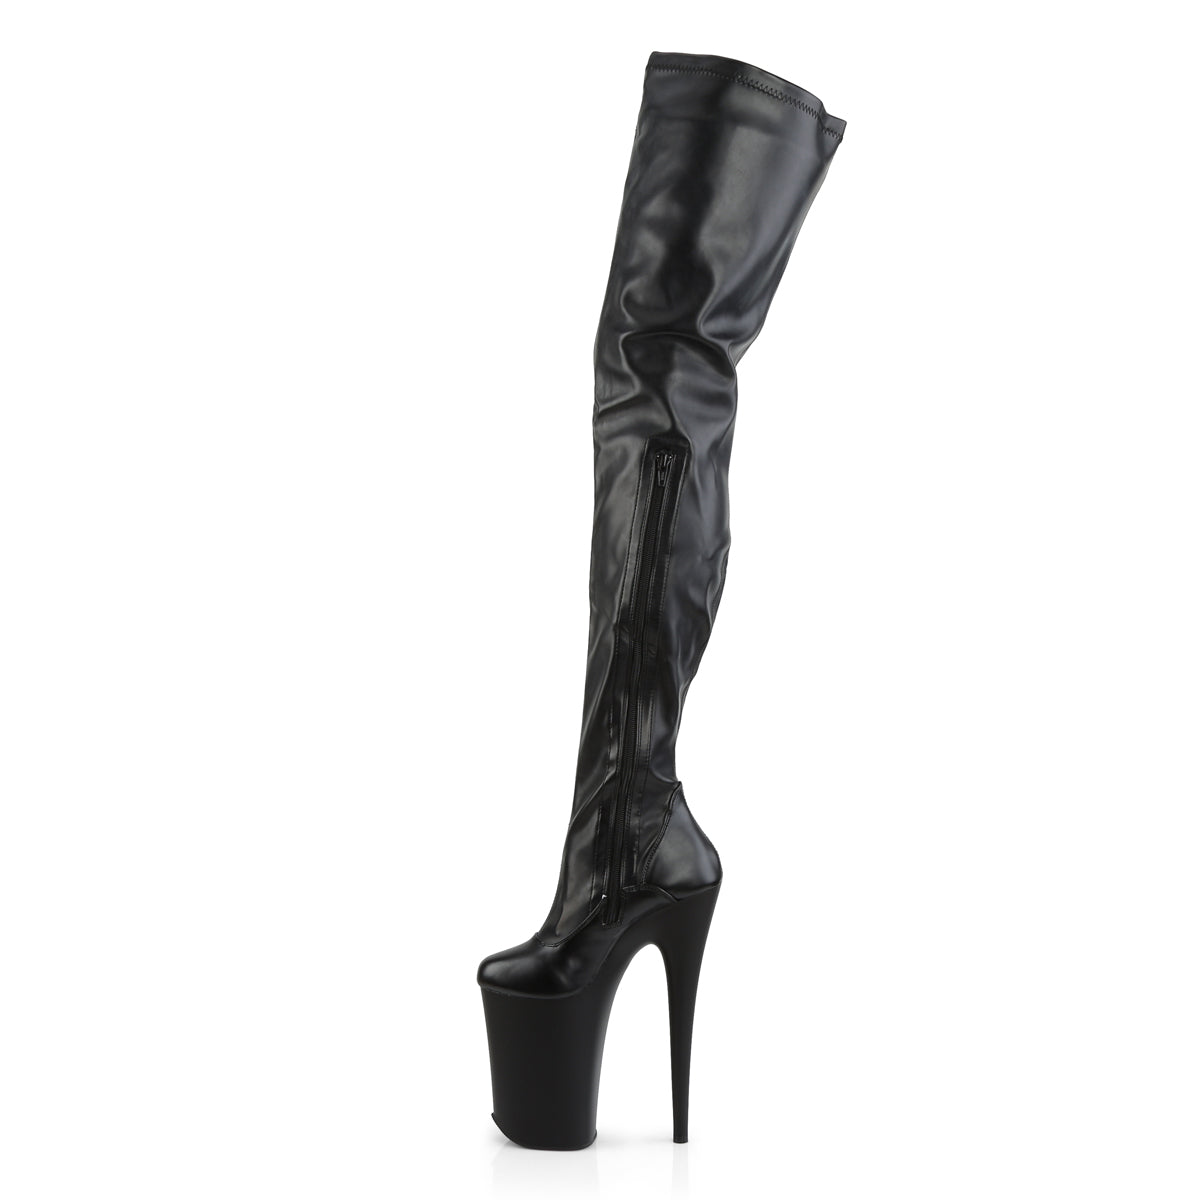 INFINITY-4000 Pleaser 9 Inch Heel Black Pole Dancer Platform-Pleaser- Sexy Shoes Pole Dance Heels